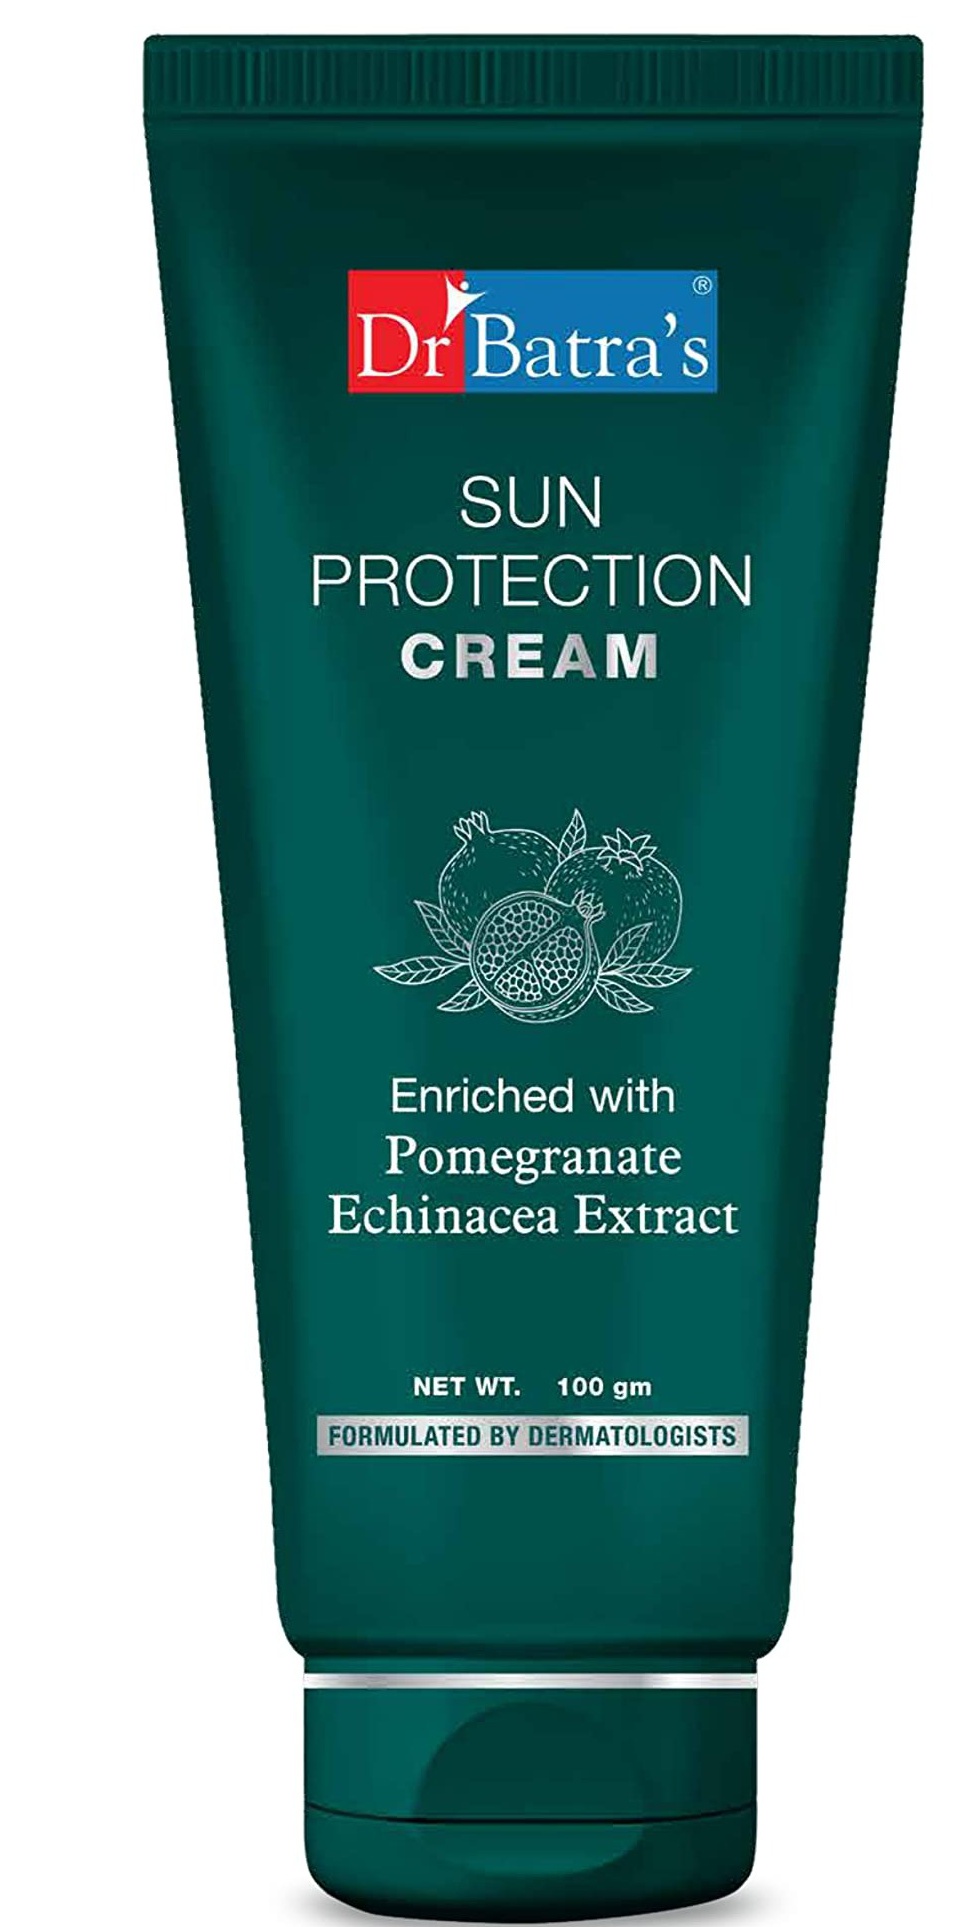 Dr. Batra's Dr Batra's Sun Protection Cream SPF 30 Sunscreen